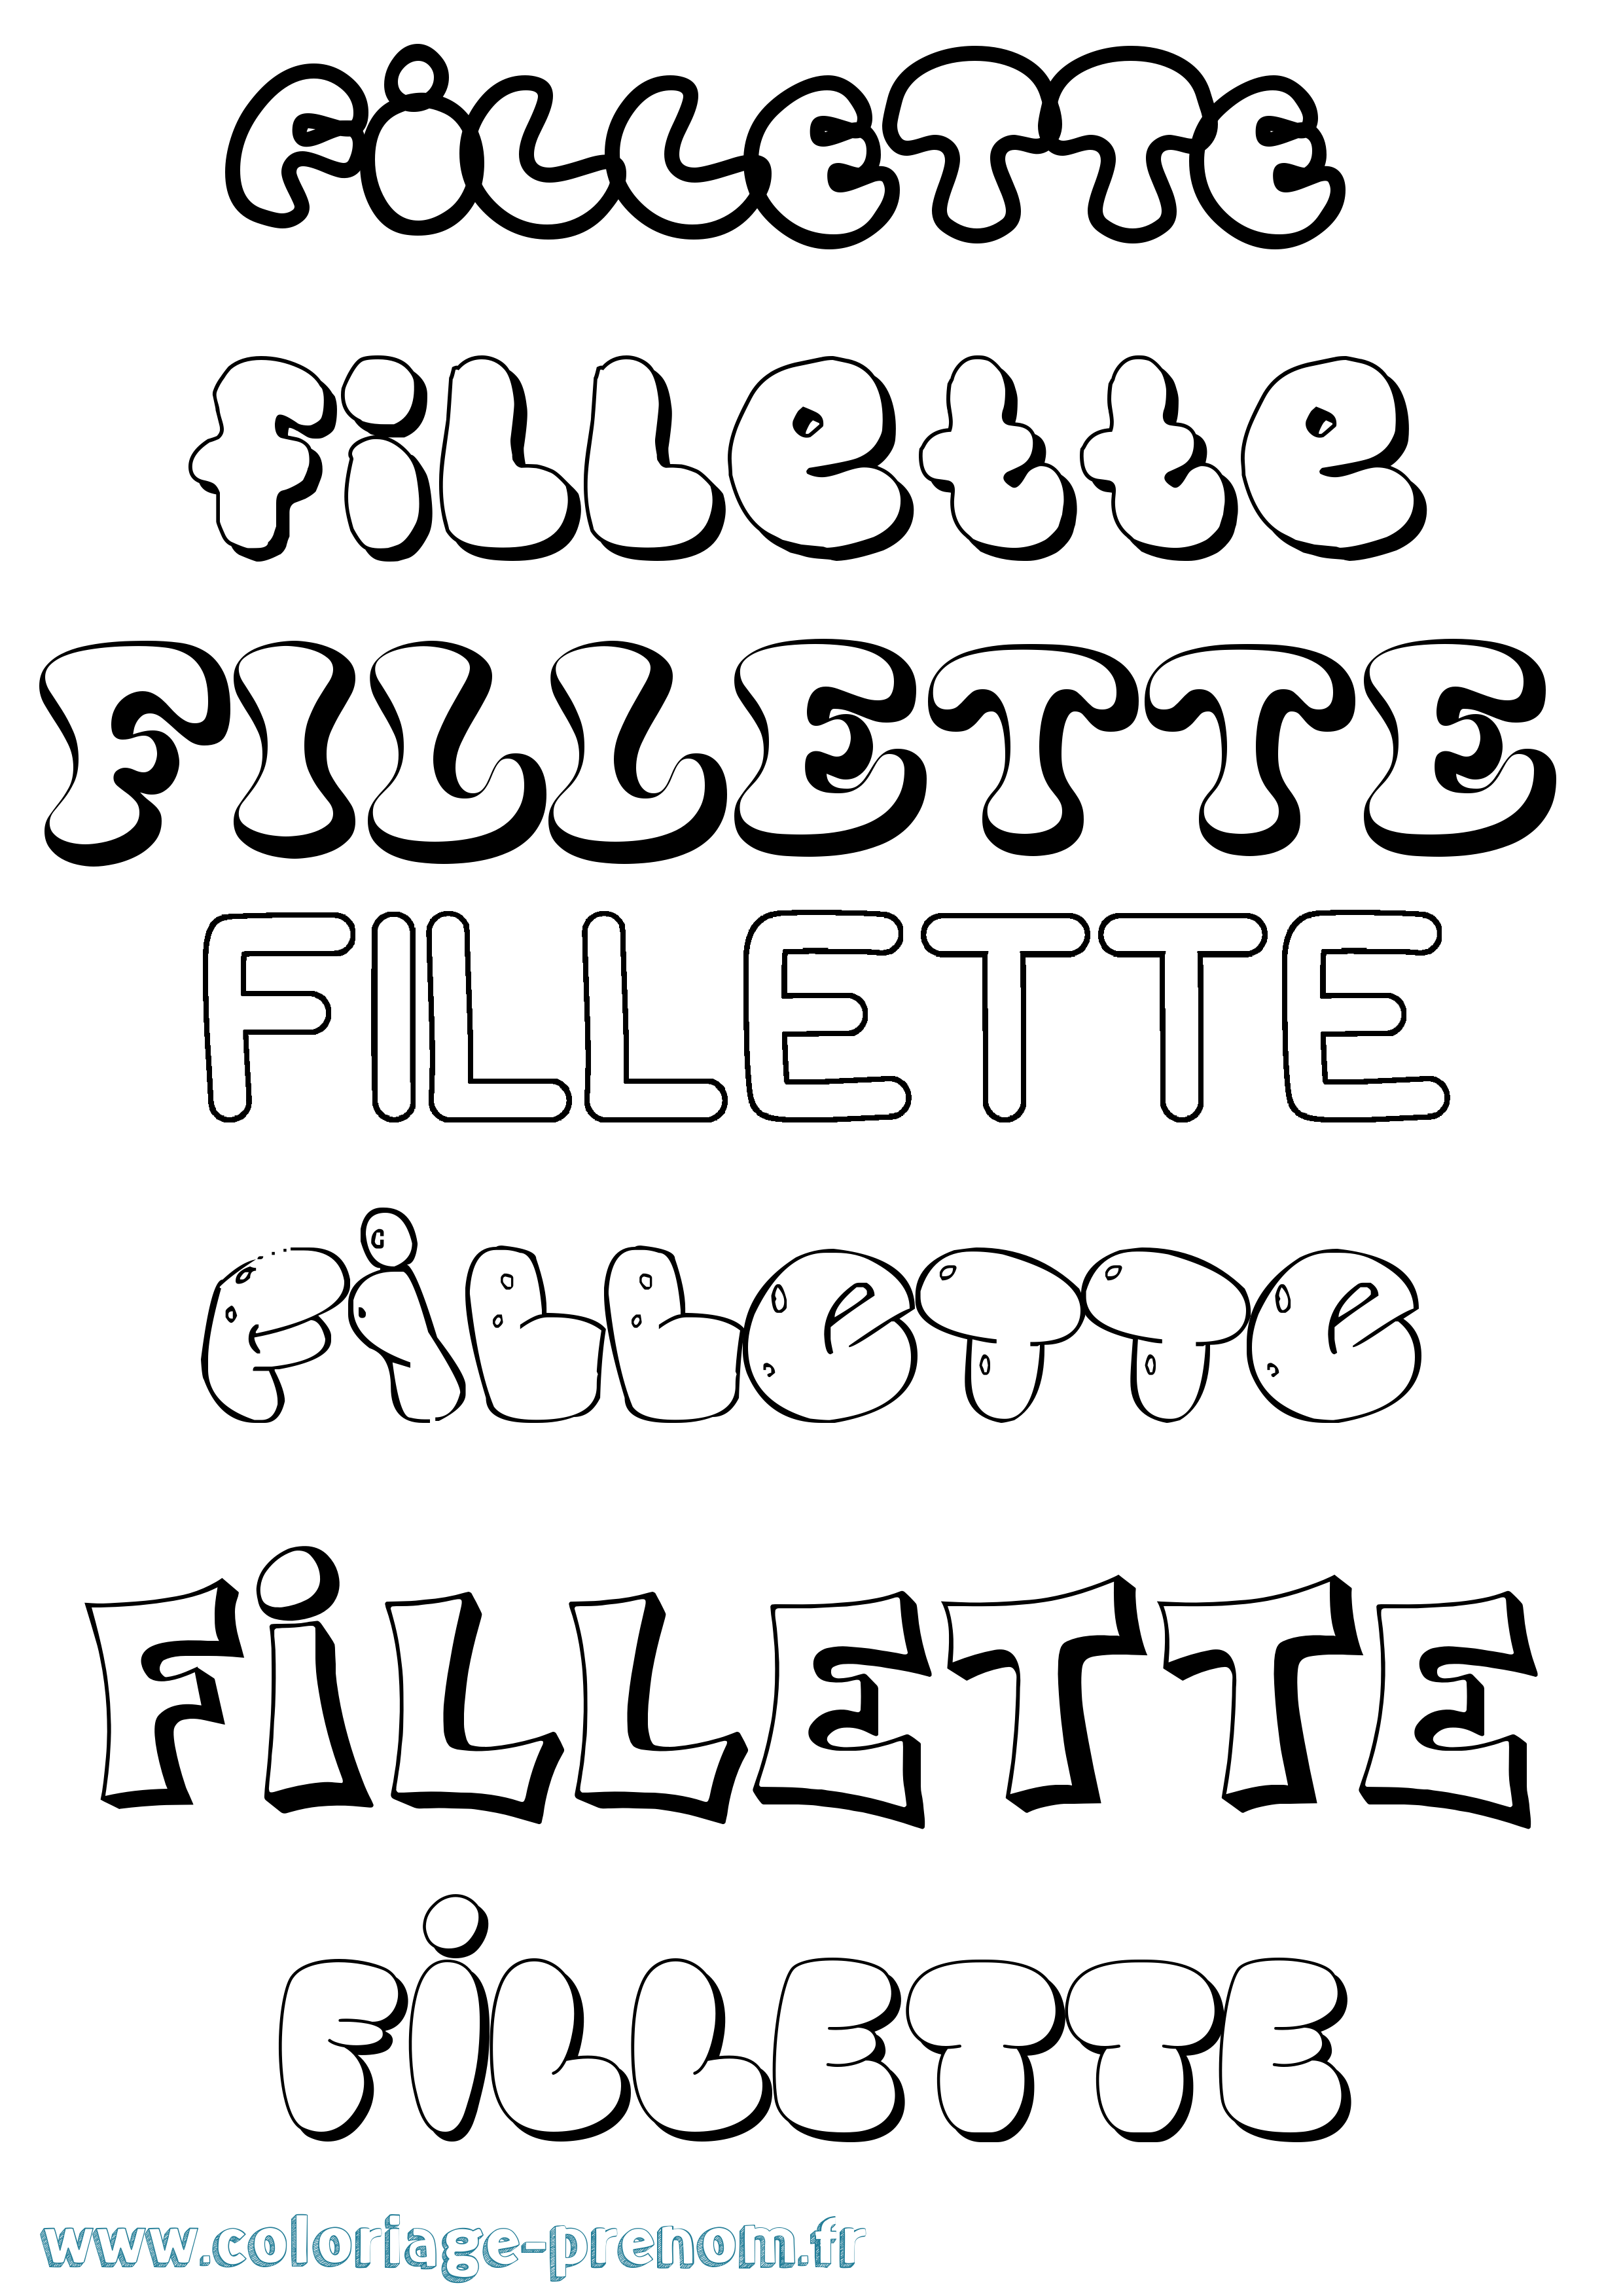 Coloriage prénom Fillette Bubble